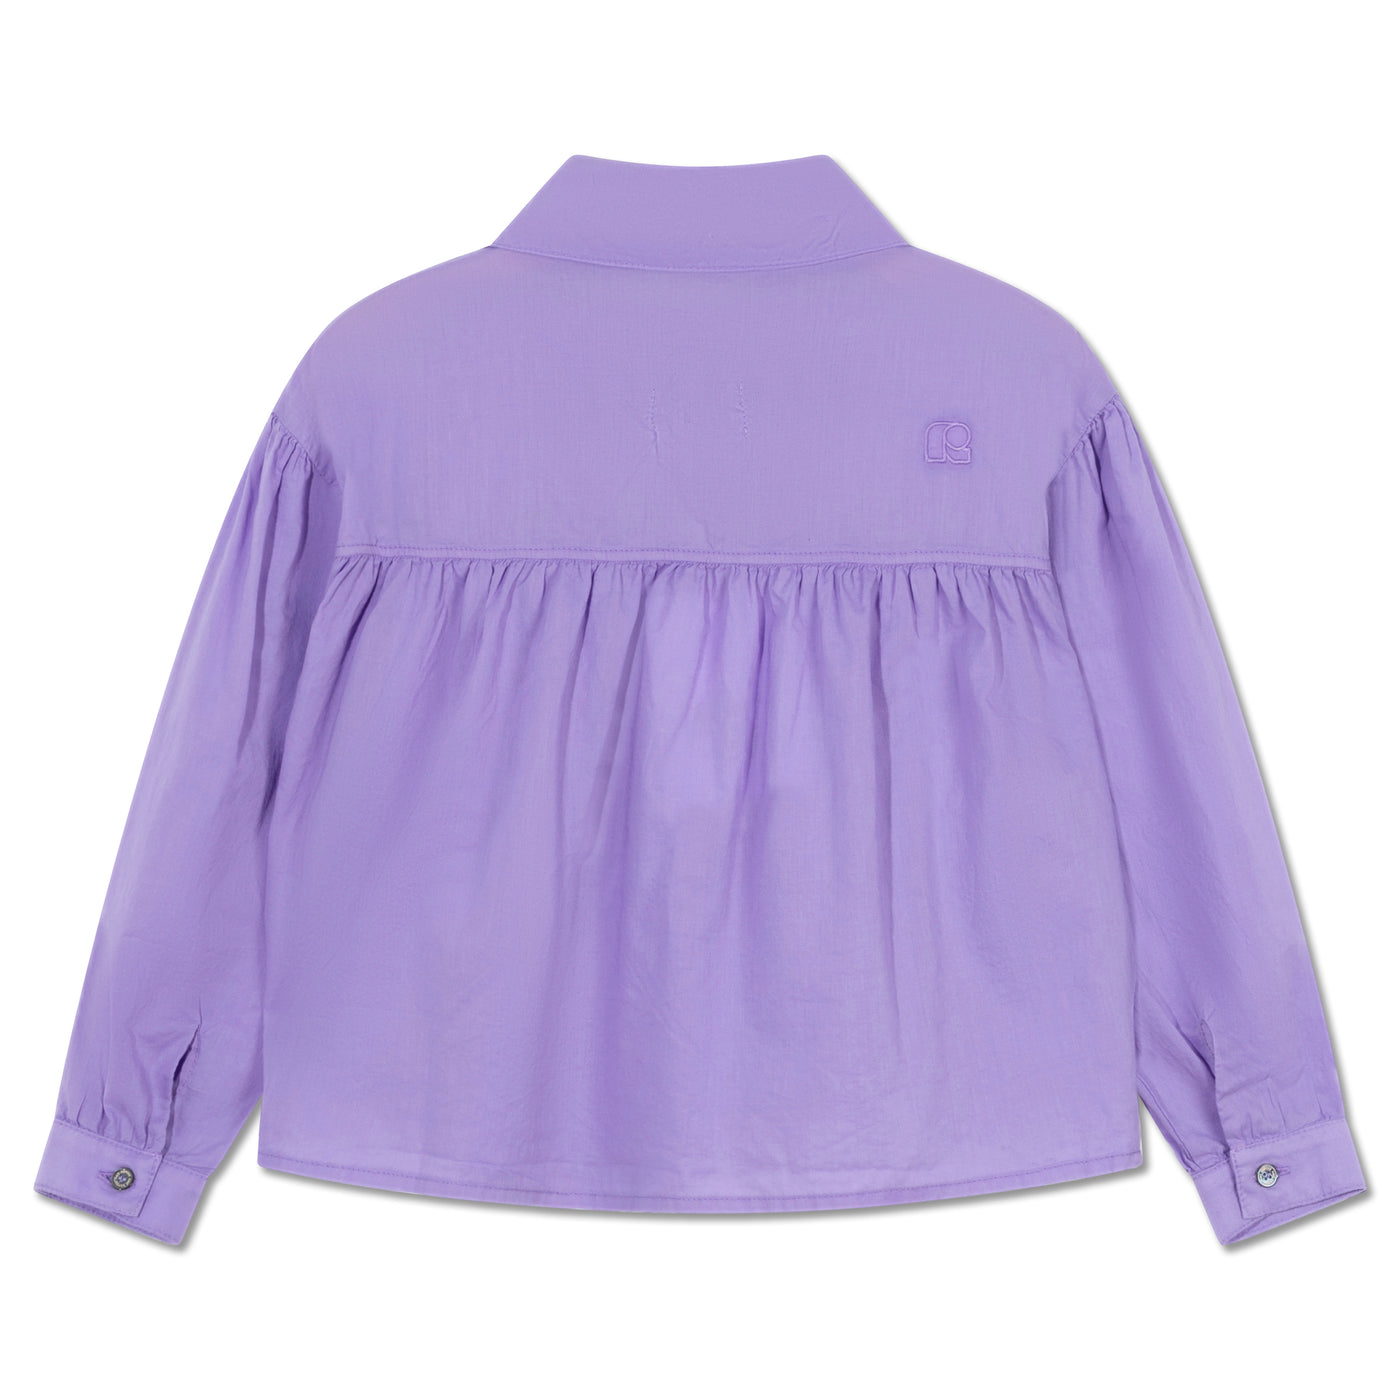 at ease blouse - violet violet